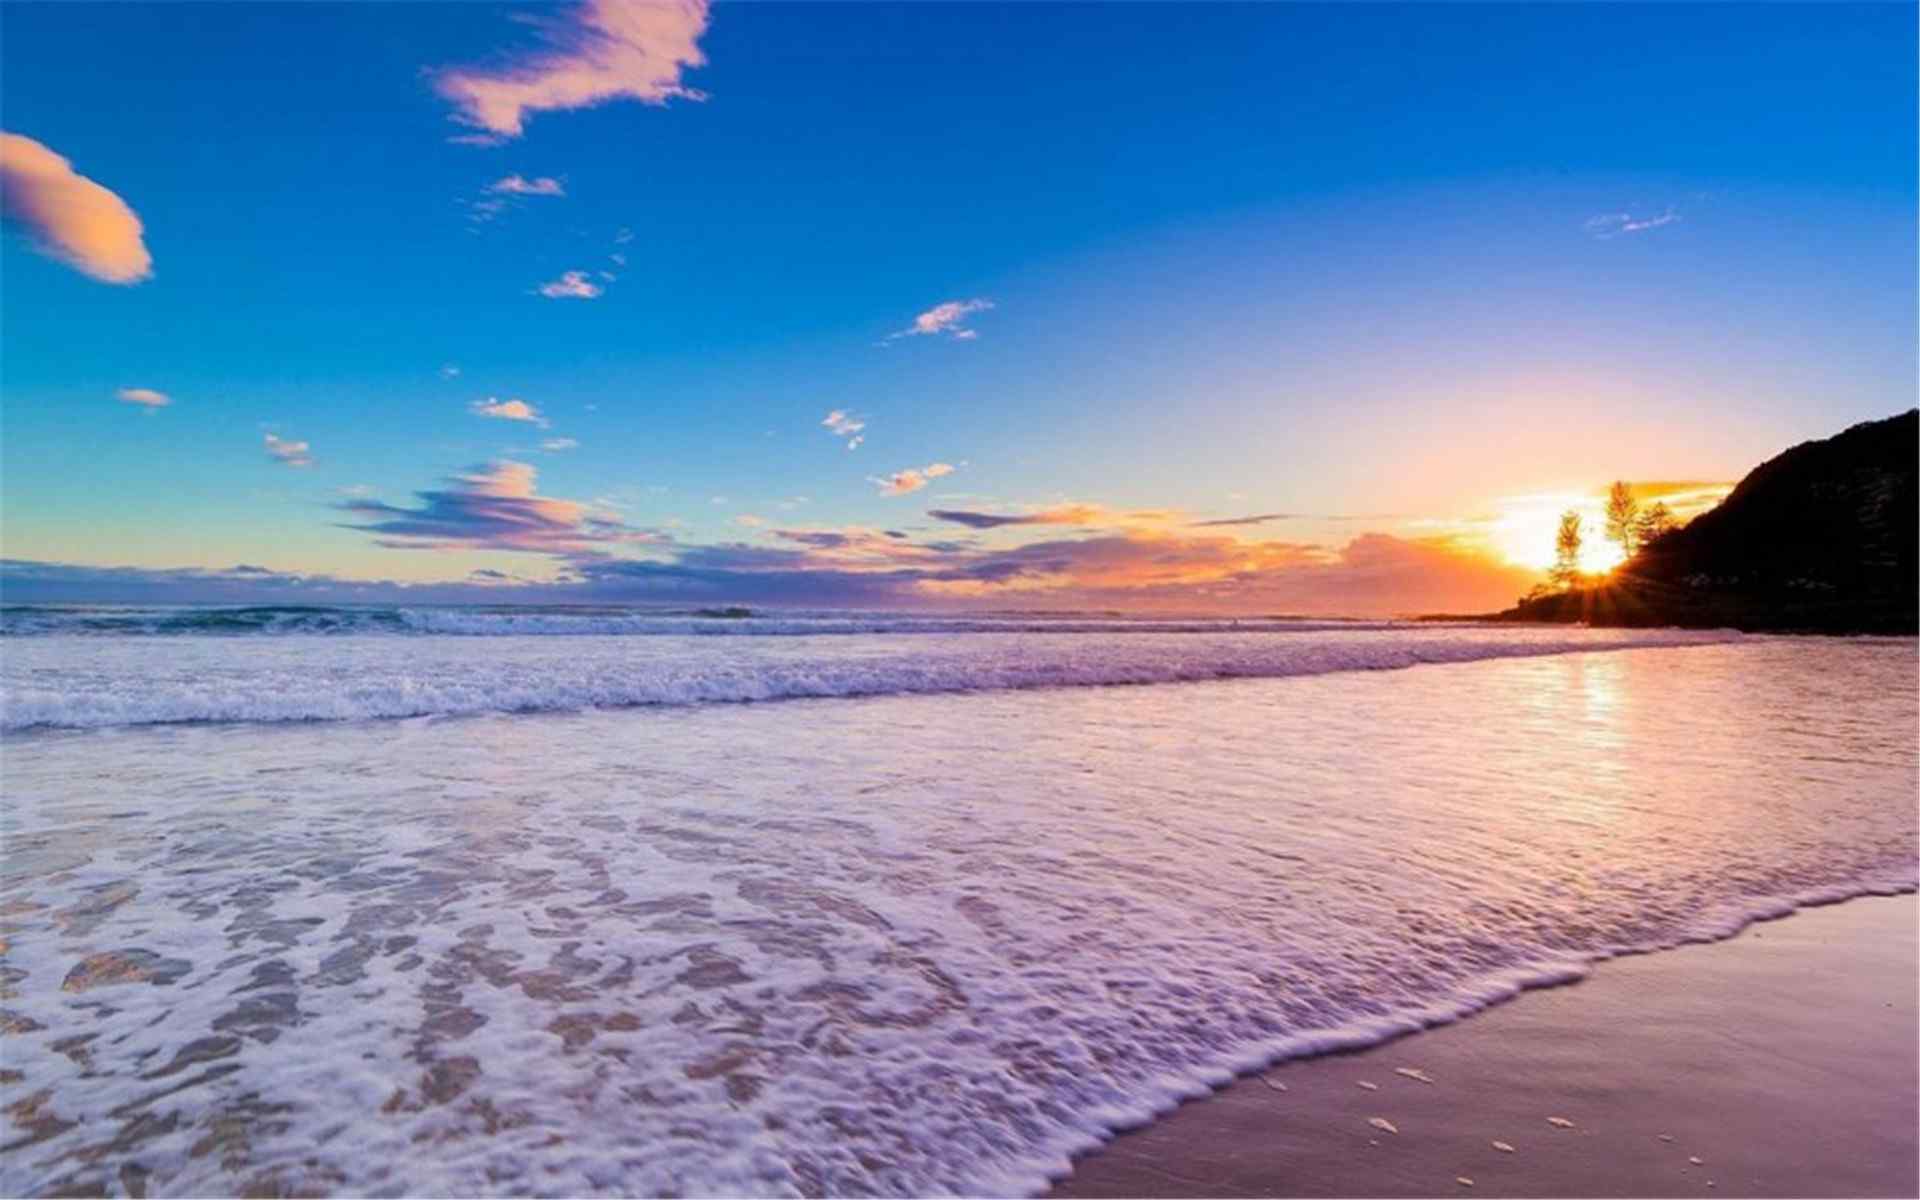 唯美的夏威夷海边风景高清壁纸